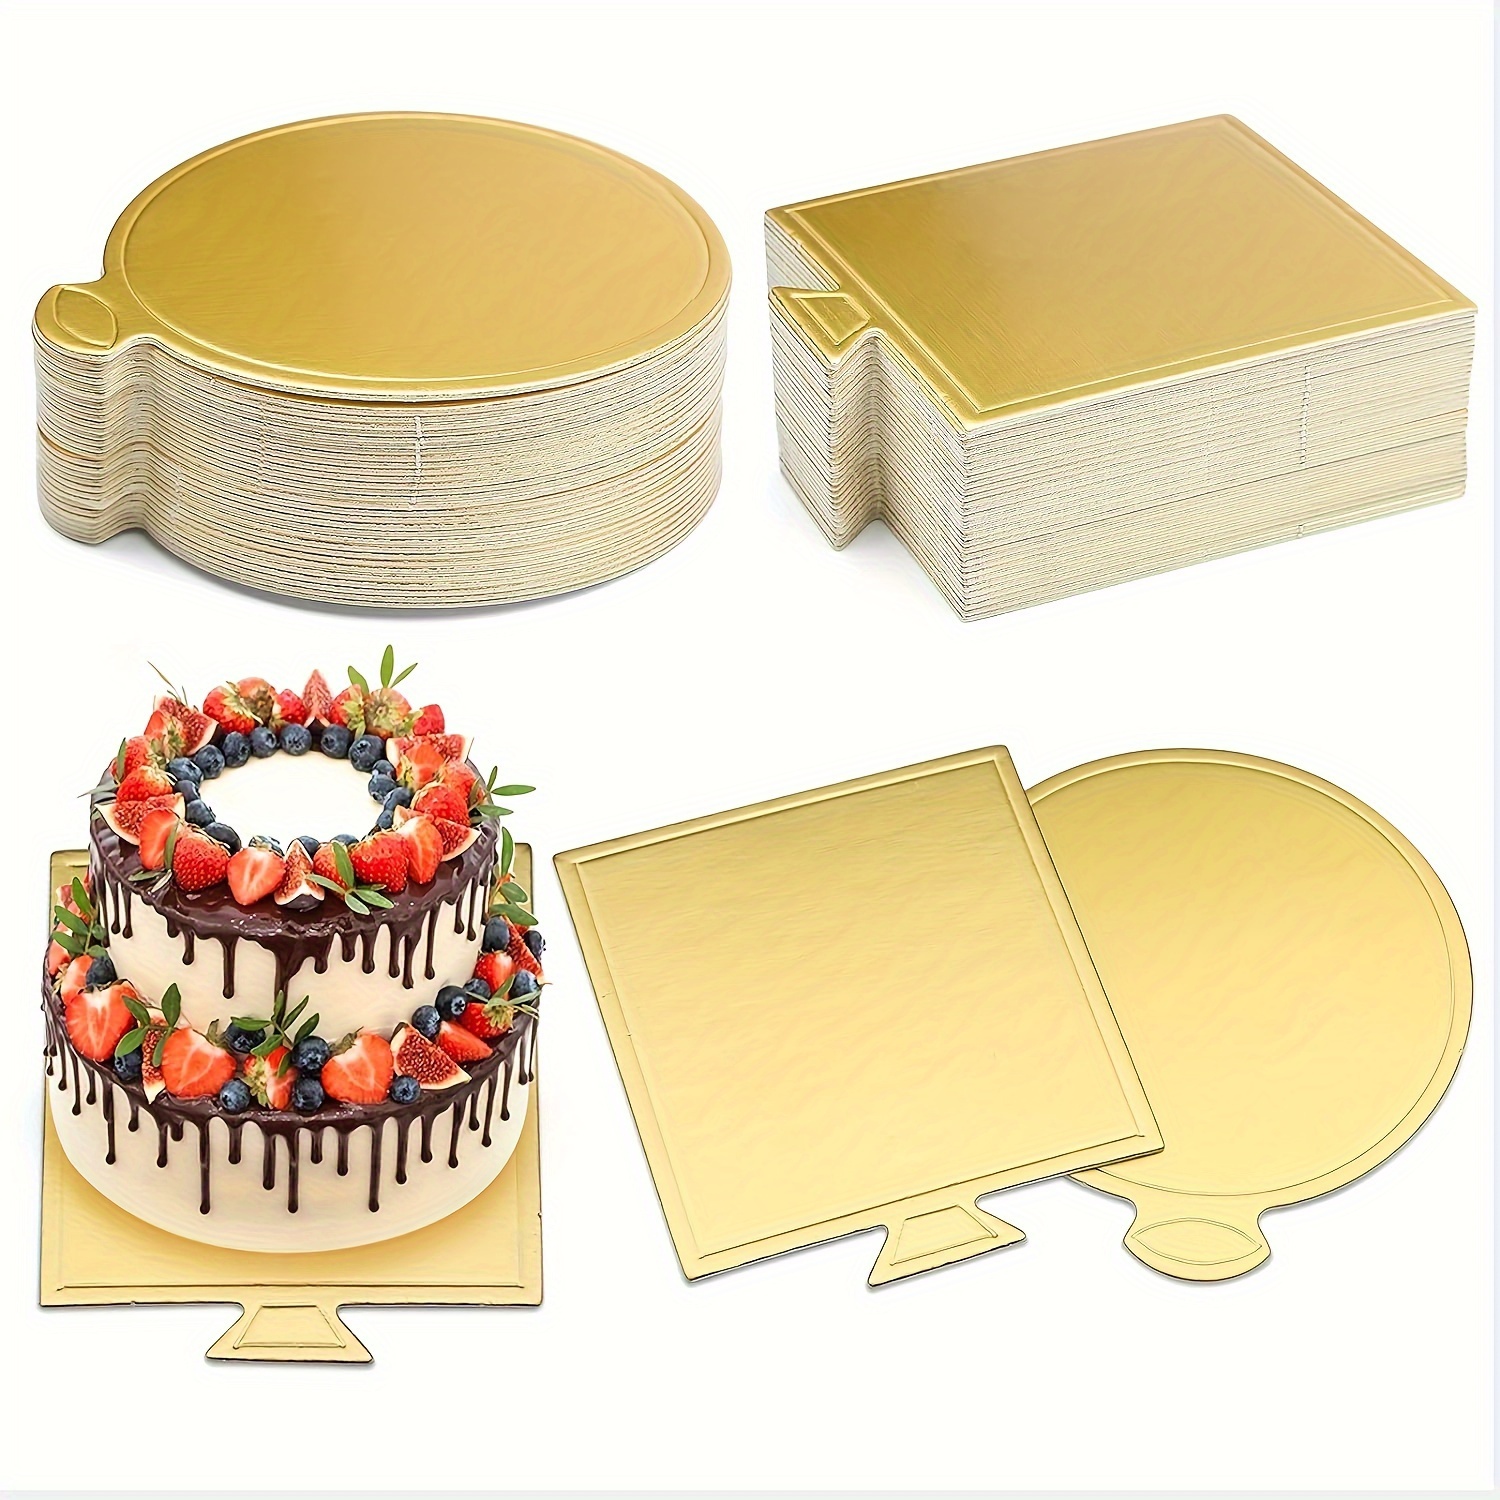 CPDD Lot de 20 planches à gâteau 20,3 cm rondes dorées, bord festonné, base  en carton compressé laminé résistant à la graisse pour pâtisseries, tartes,  pizzas et gâteaux circulaires 20,3 cm 